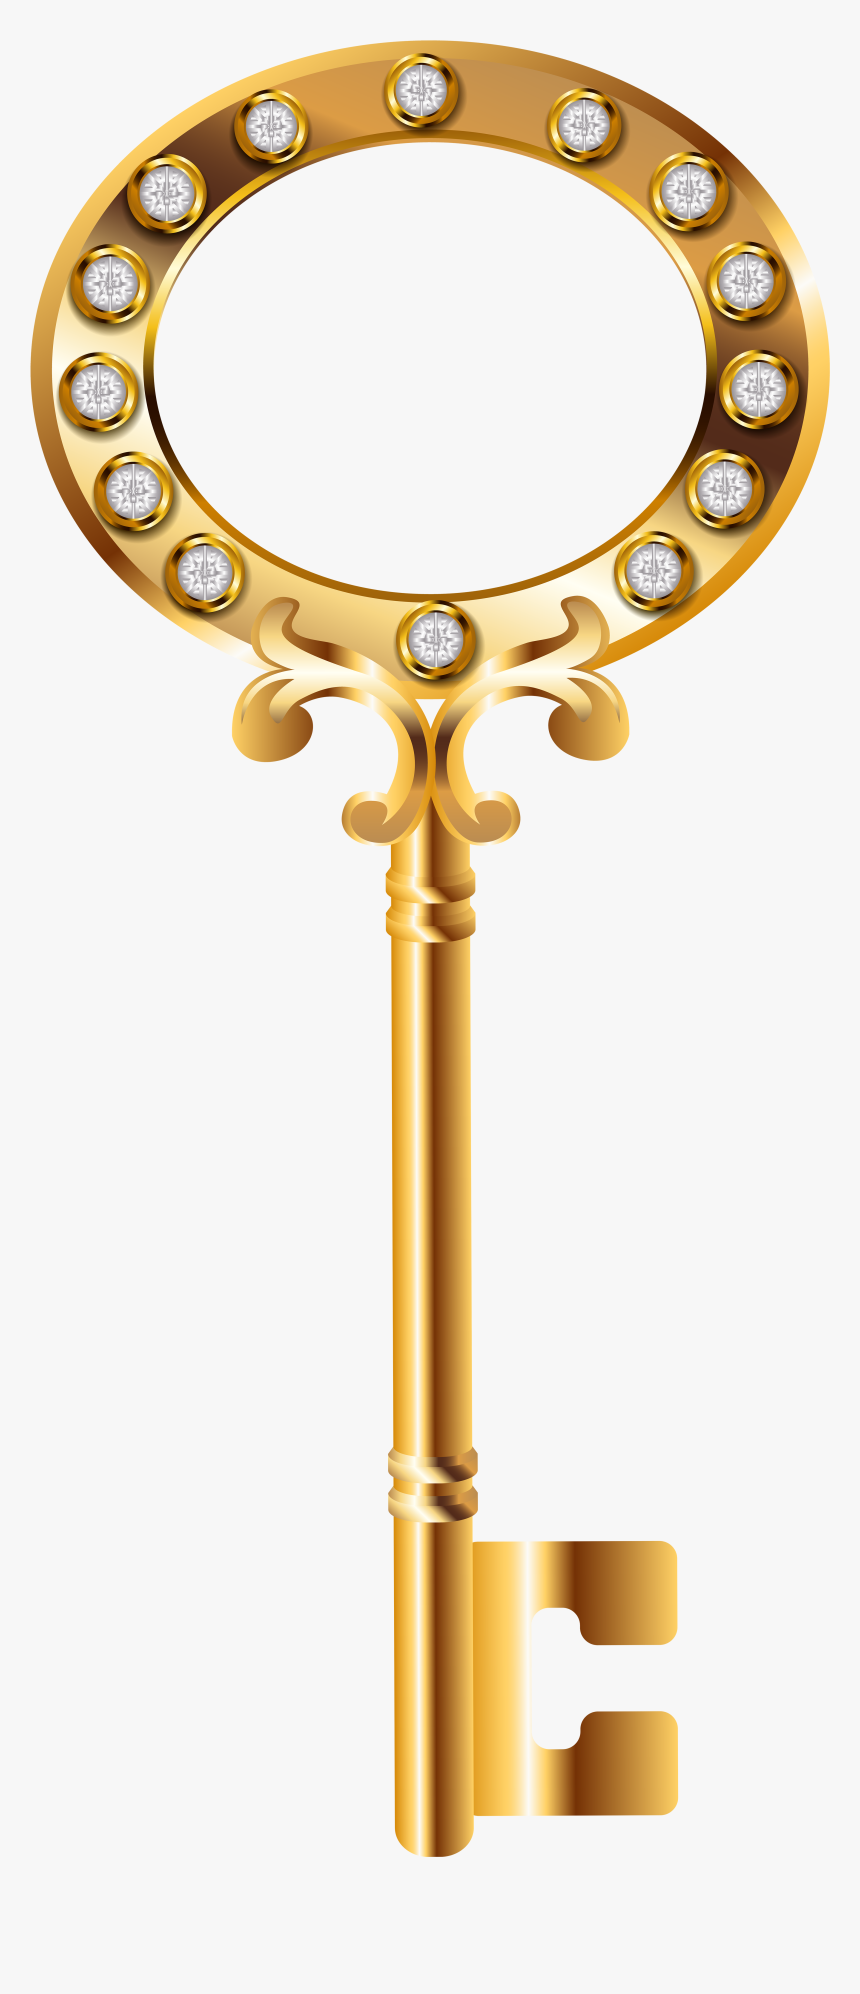 Chìa khóa vàng trong suốt -Với sự kết hợp độc đáo giữa màu vàng lấp lánh và kiểu dáng trong suốt, chìa khóa này dường như có khả năng truyền tải và kích thích trí tưởng tượng của người xem. Một điều chắc chắn là nó sẽ thu hút sự chú ý của bạn.